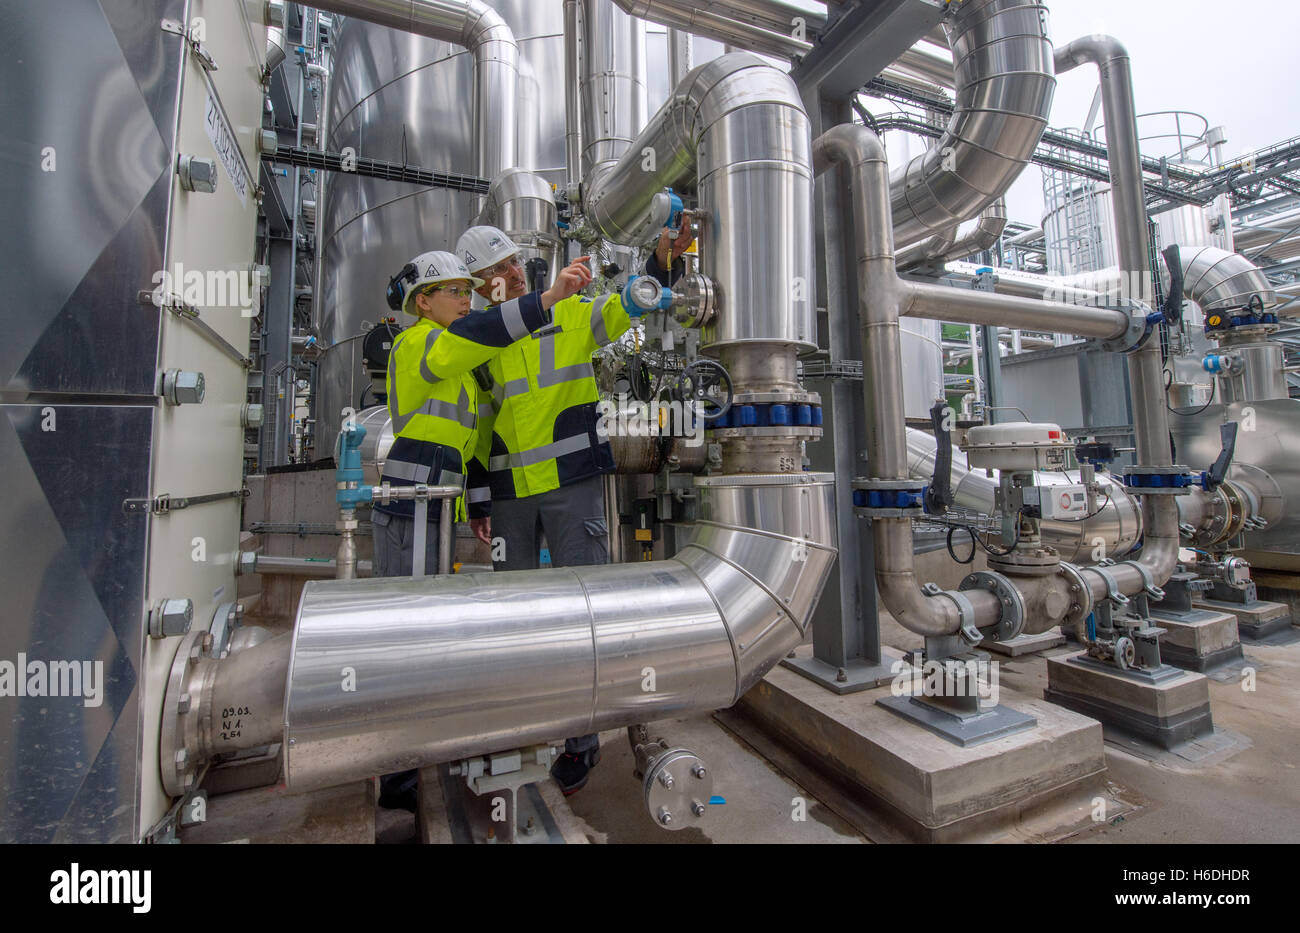 Barby, Allemagne. 27 Oct, 2016. Les employés de Cargill Stefanie Schueler et Martin ver travaillant sur la nouvelle usine d'éthanol de l'US-société américaine Cargill à Montmélian, Allemagne, 27 octobre 2016. Cargill exploite l'une des plus grandes usines d'amidon de blé européen en Saxe-Anhalt. Cette année, la production d'alcool premium a été ajouté. PHOTO : HENDRIK SCHMIDT/dpa/Alamy Live News Banque D'Images